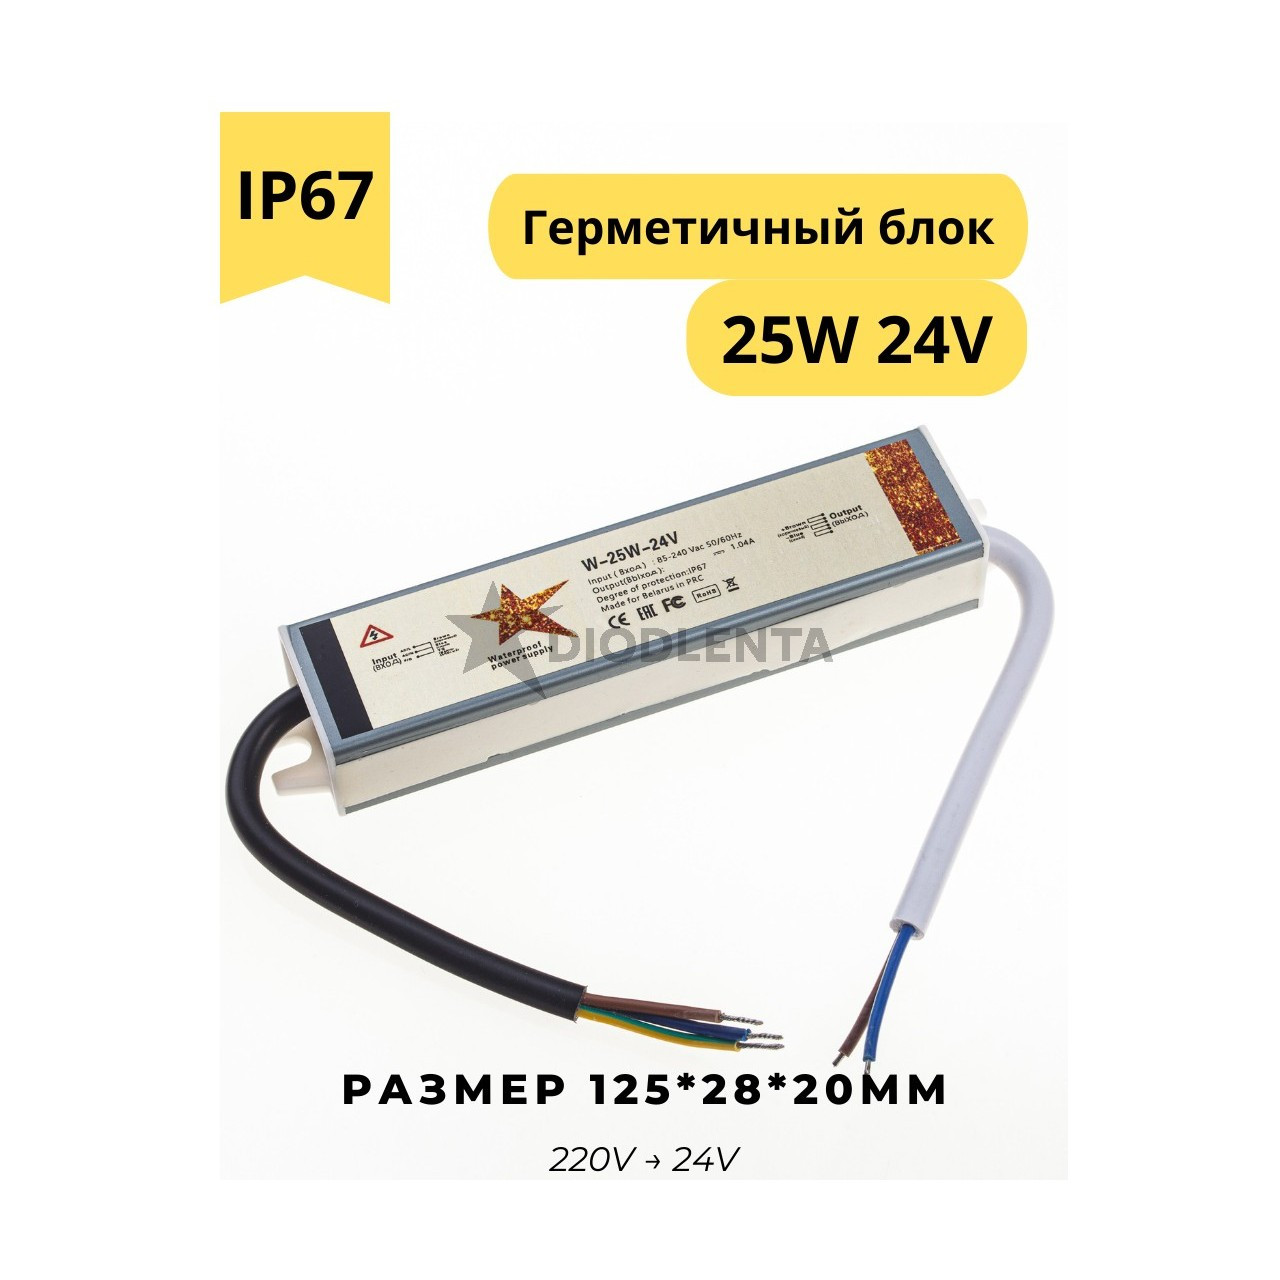 Герметичный блок питания W-25W-24v IP67 для светодиодных лент